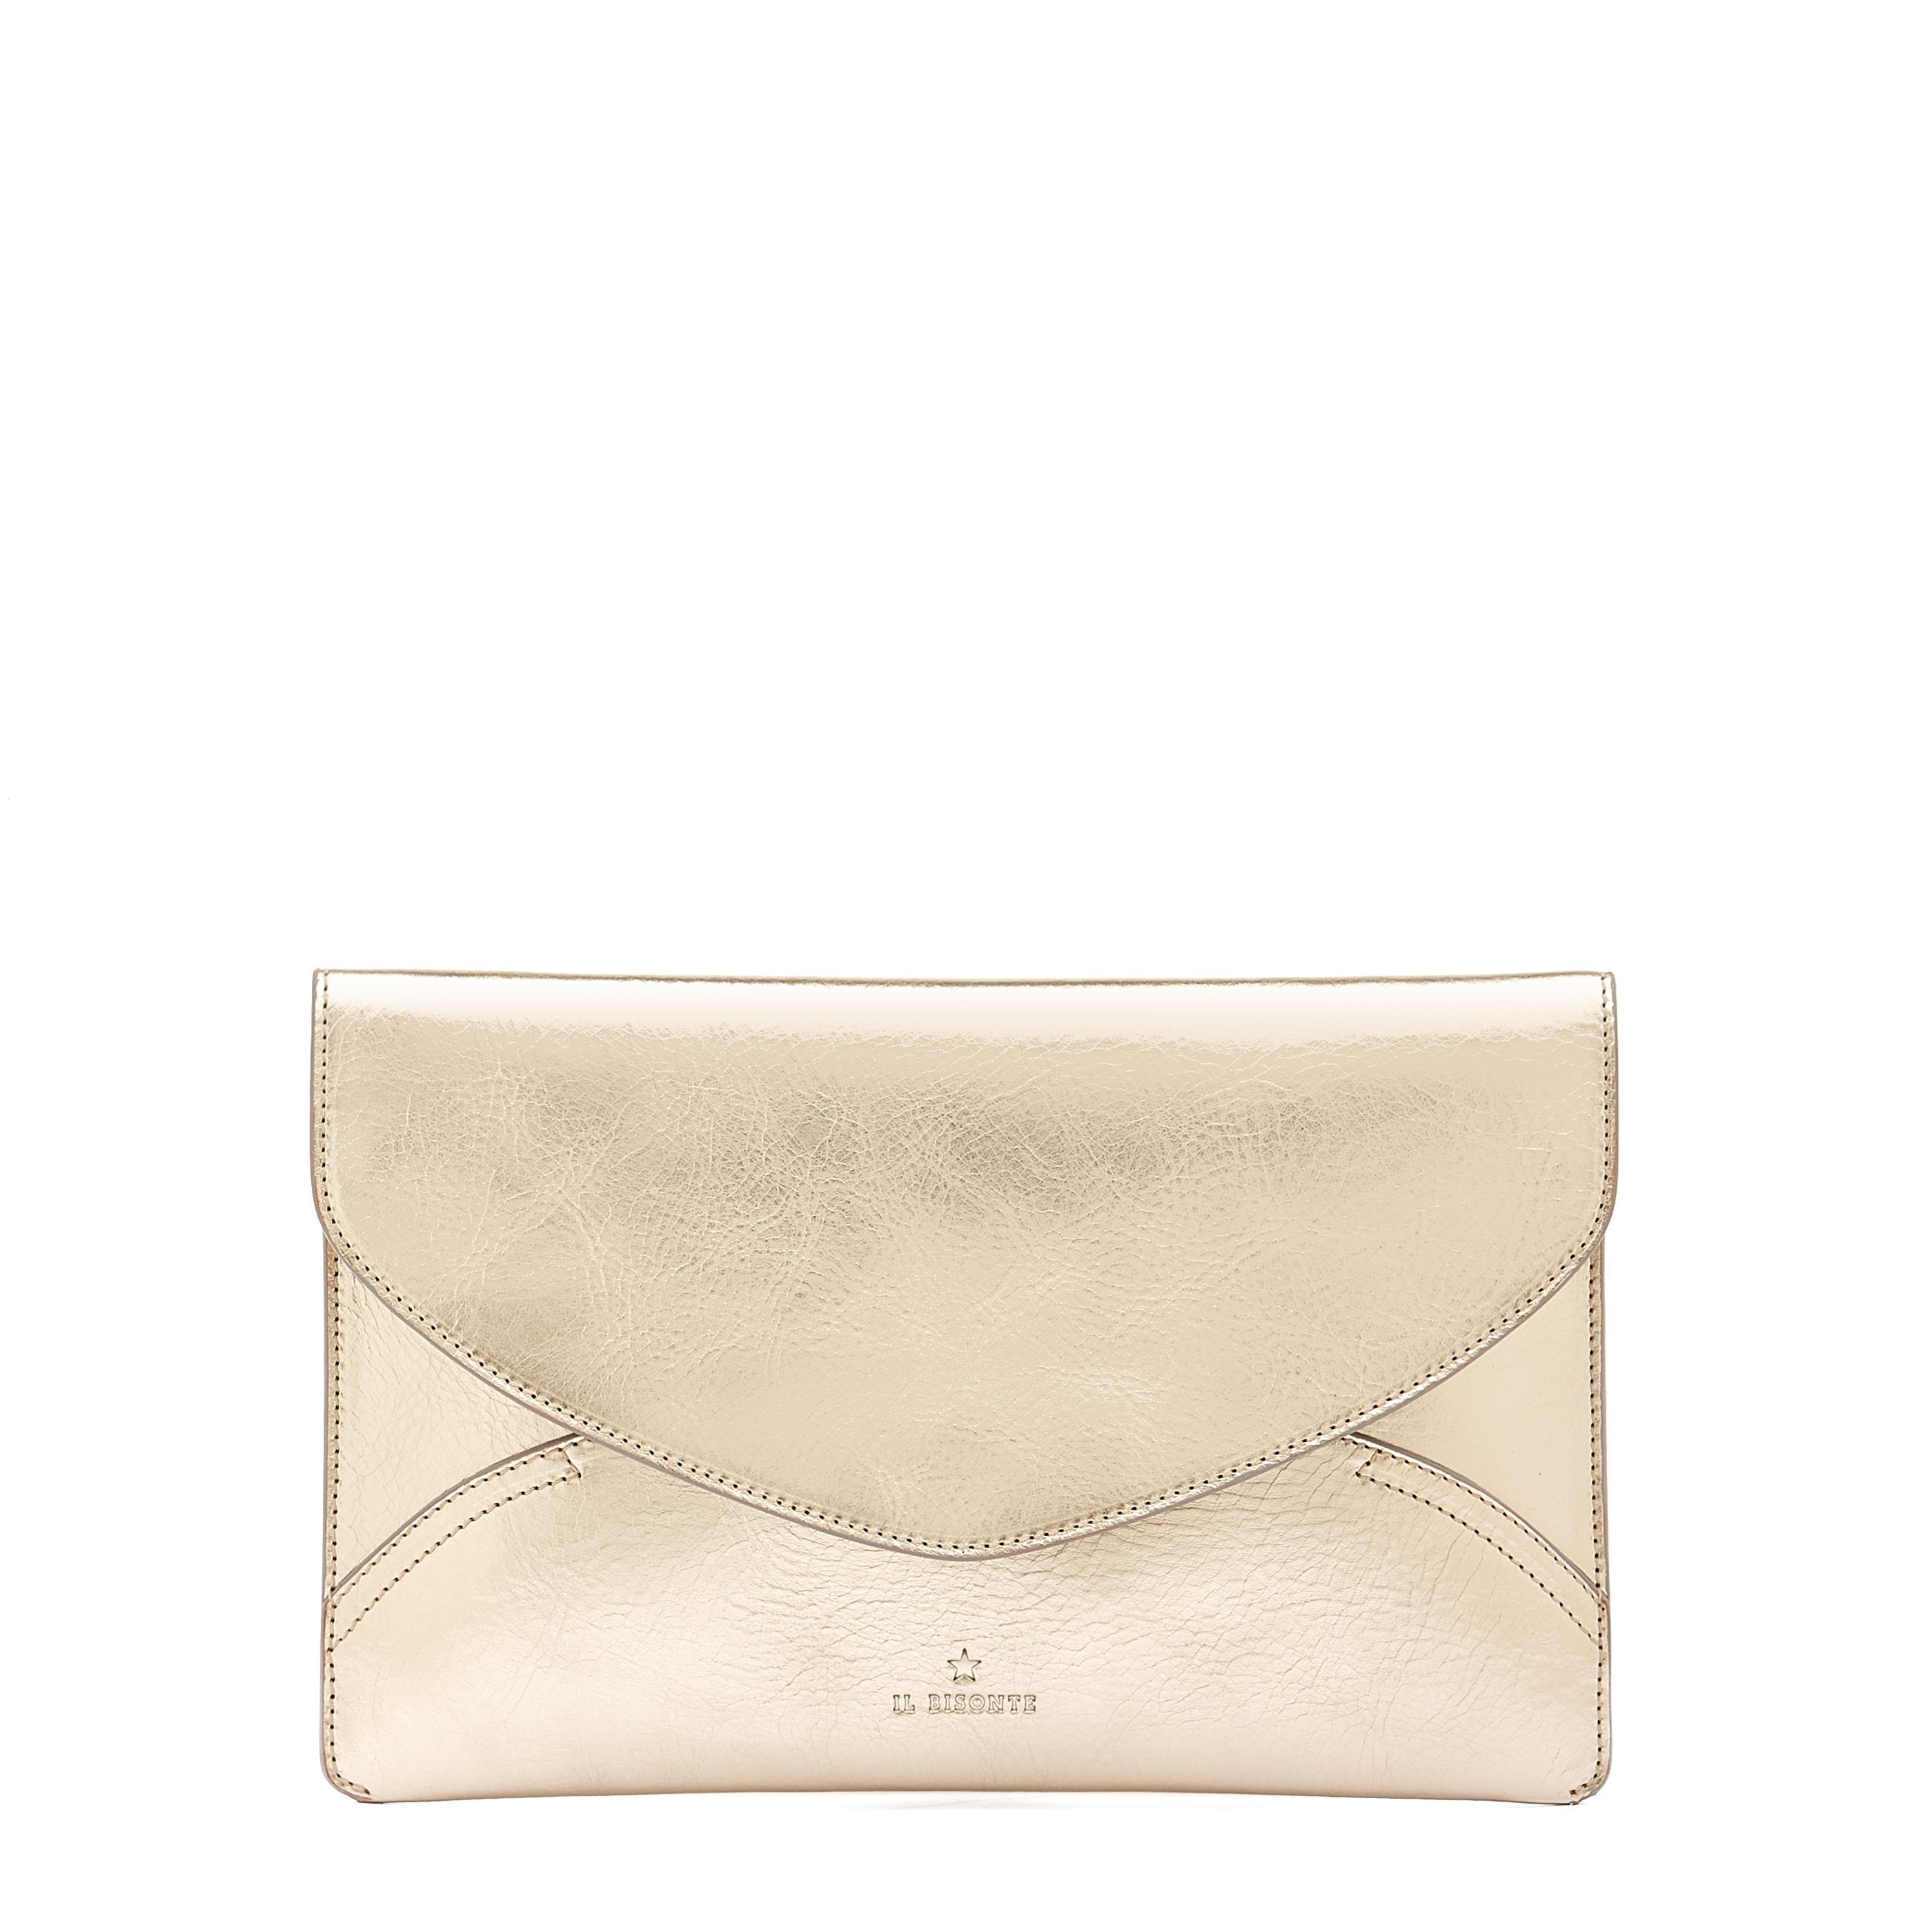 Esperia | Women's Clutch Bag in Metallic Leather color Metallic Platinum